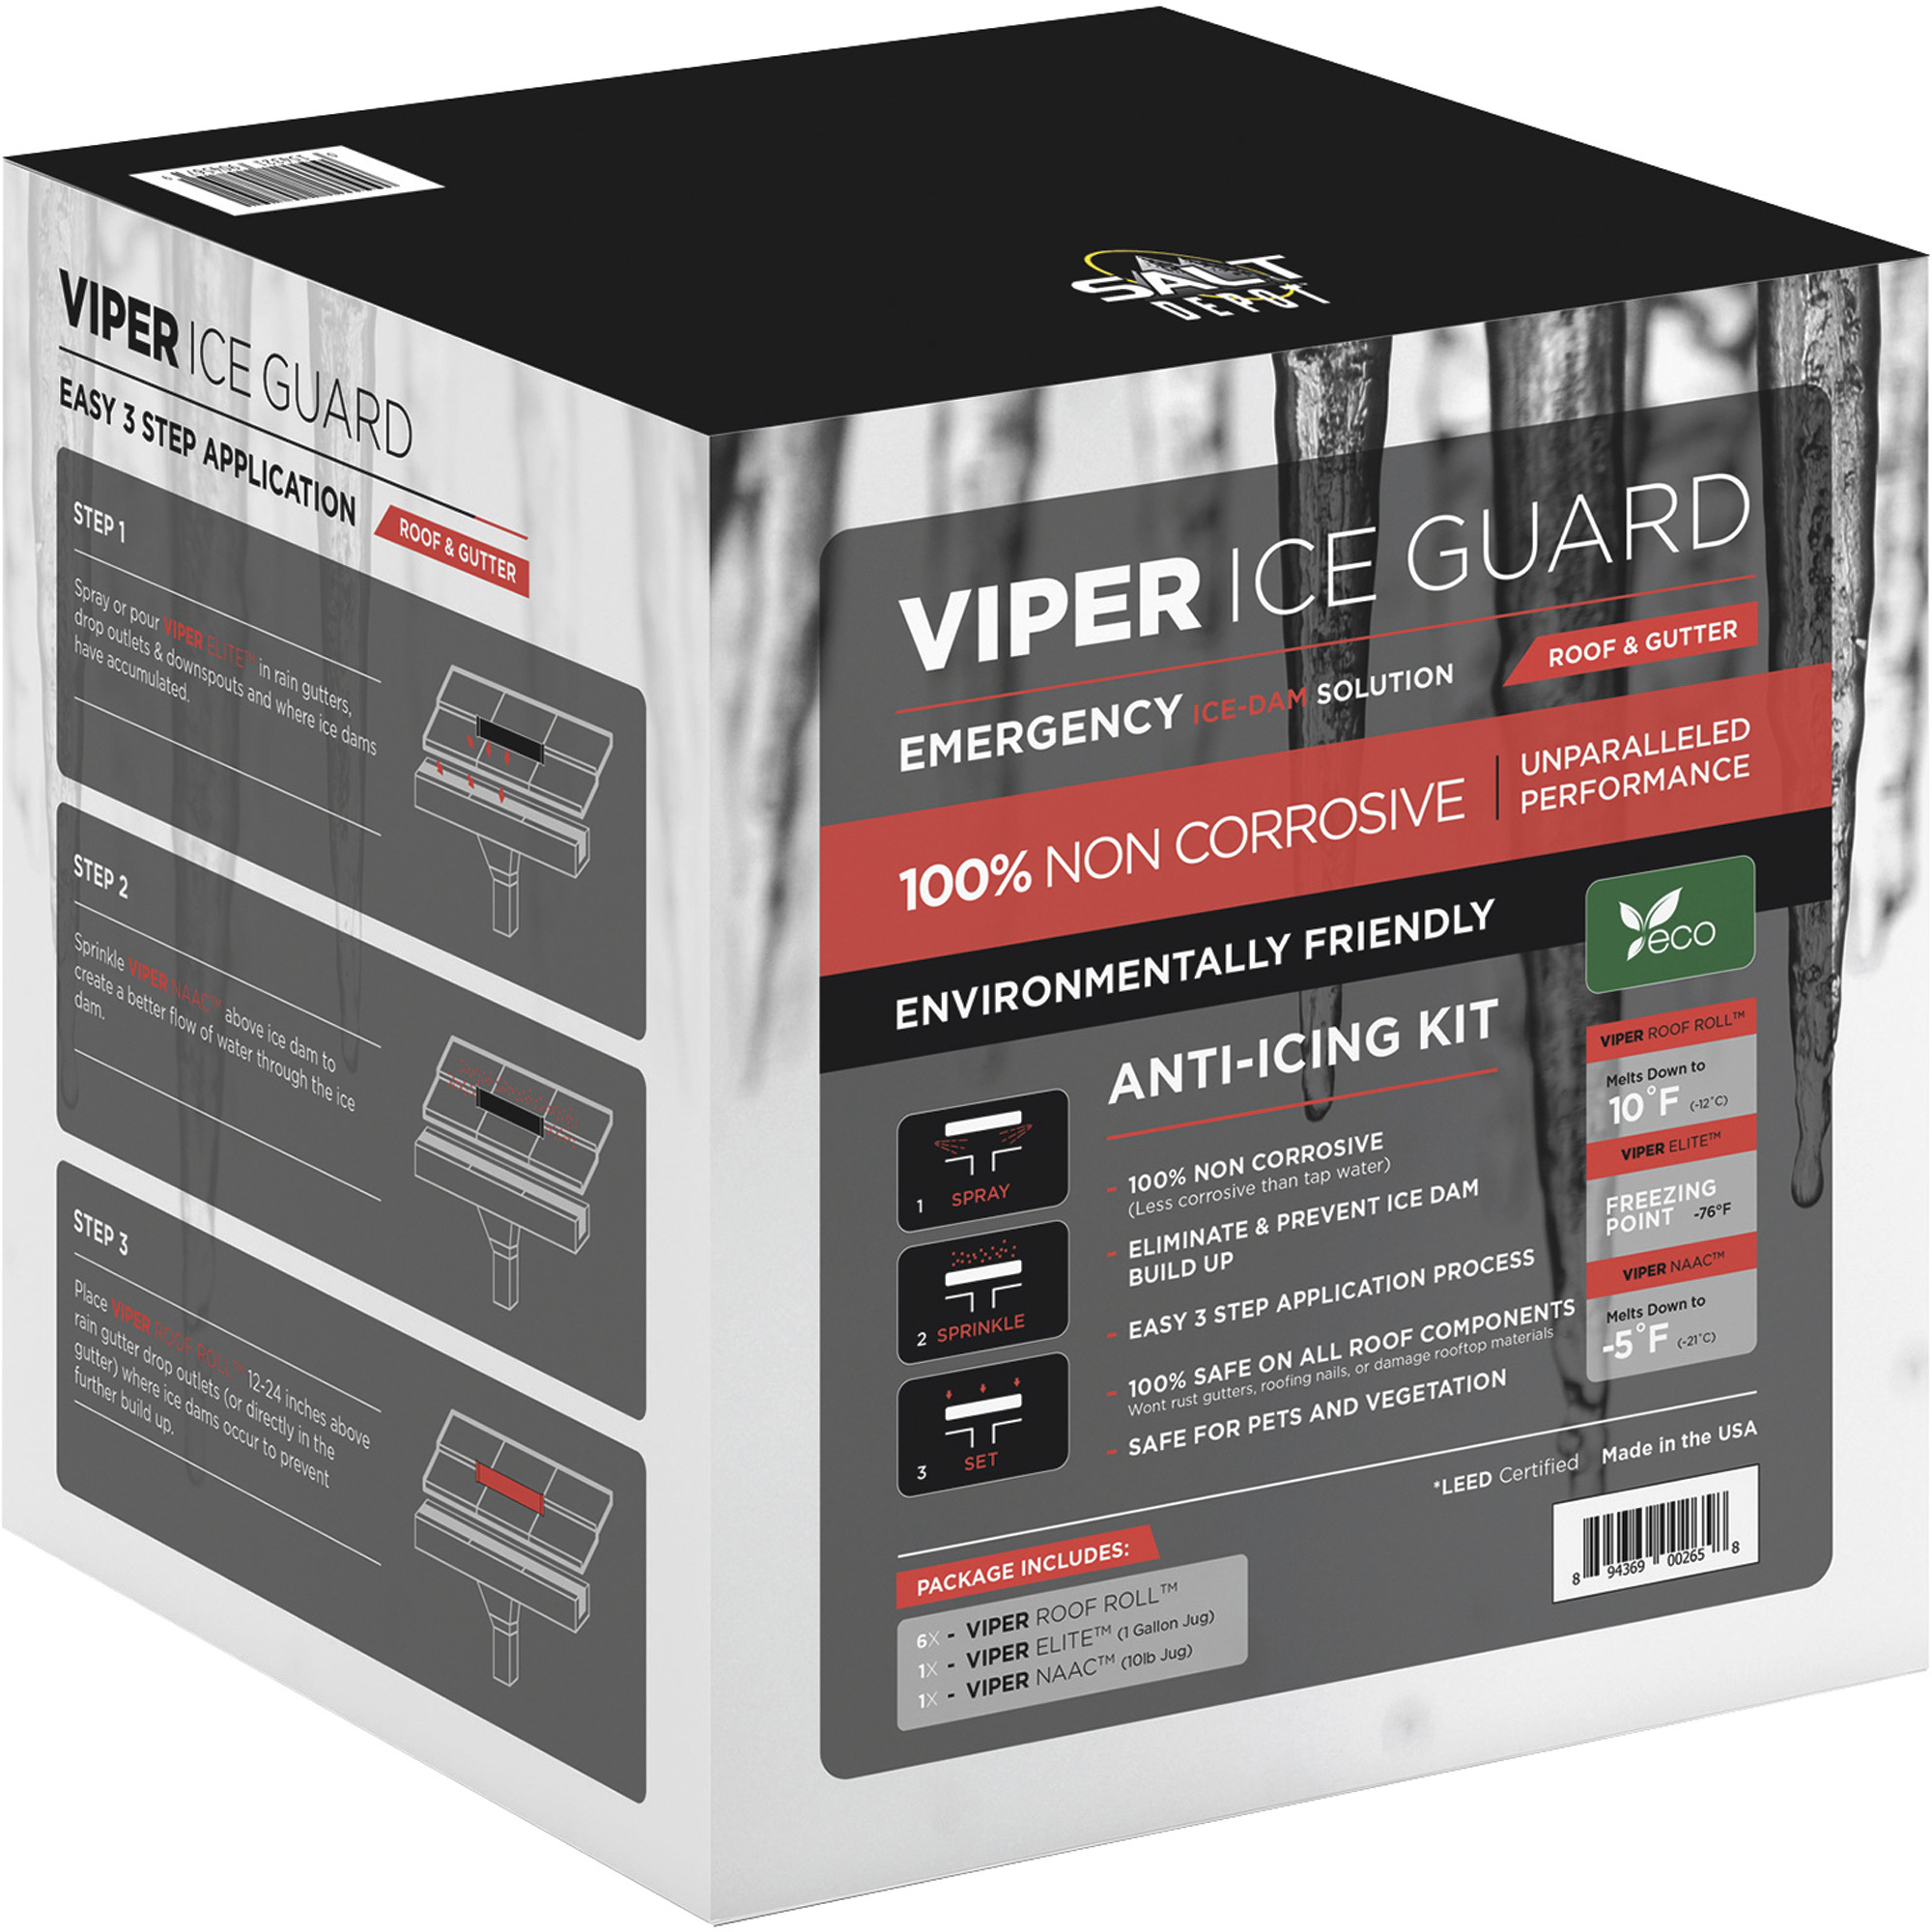 Salt Depot Viper Ice Guard Kit â 1-Gal. Liquid Potassium Acetate/10-lb. Shaker Jug of Sodium Acetate/6 Viper Roof Rolls